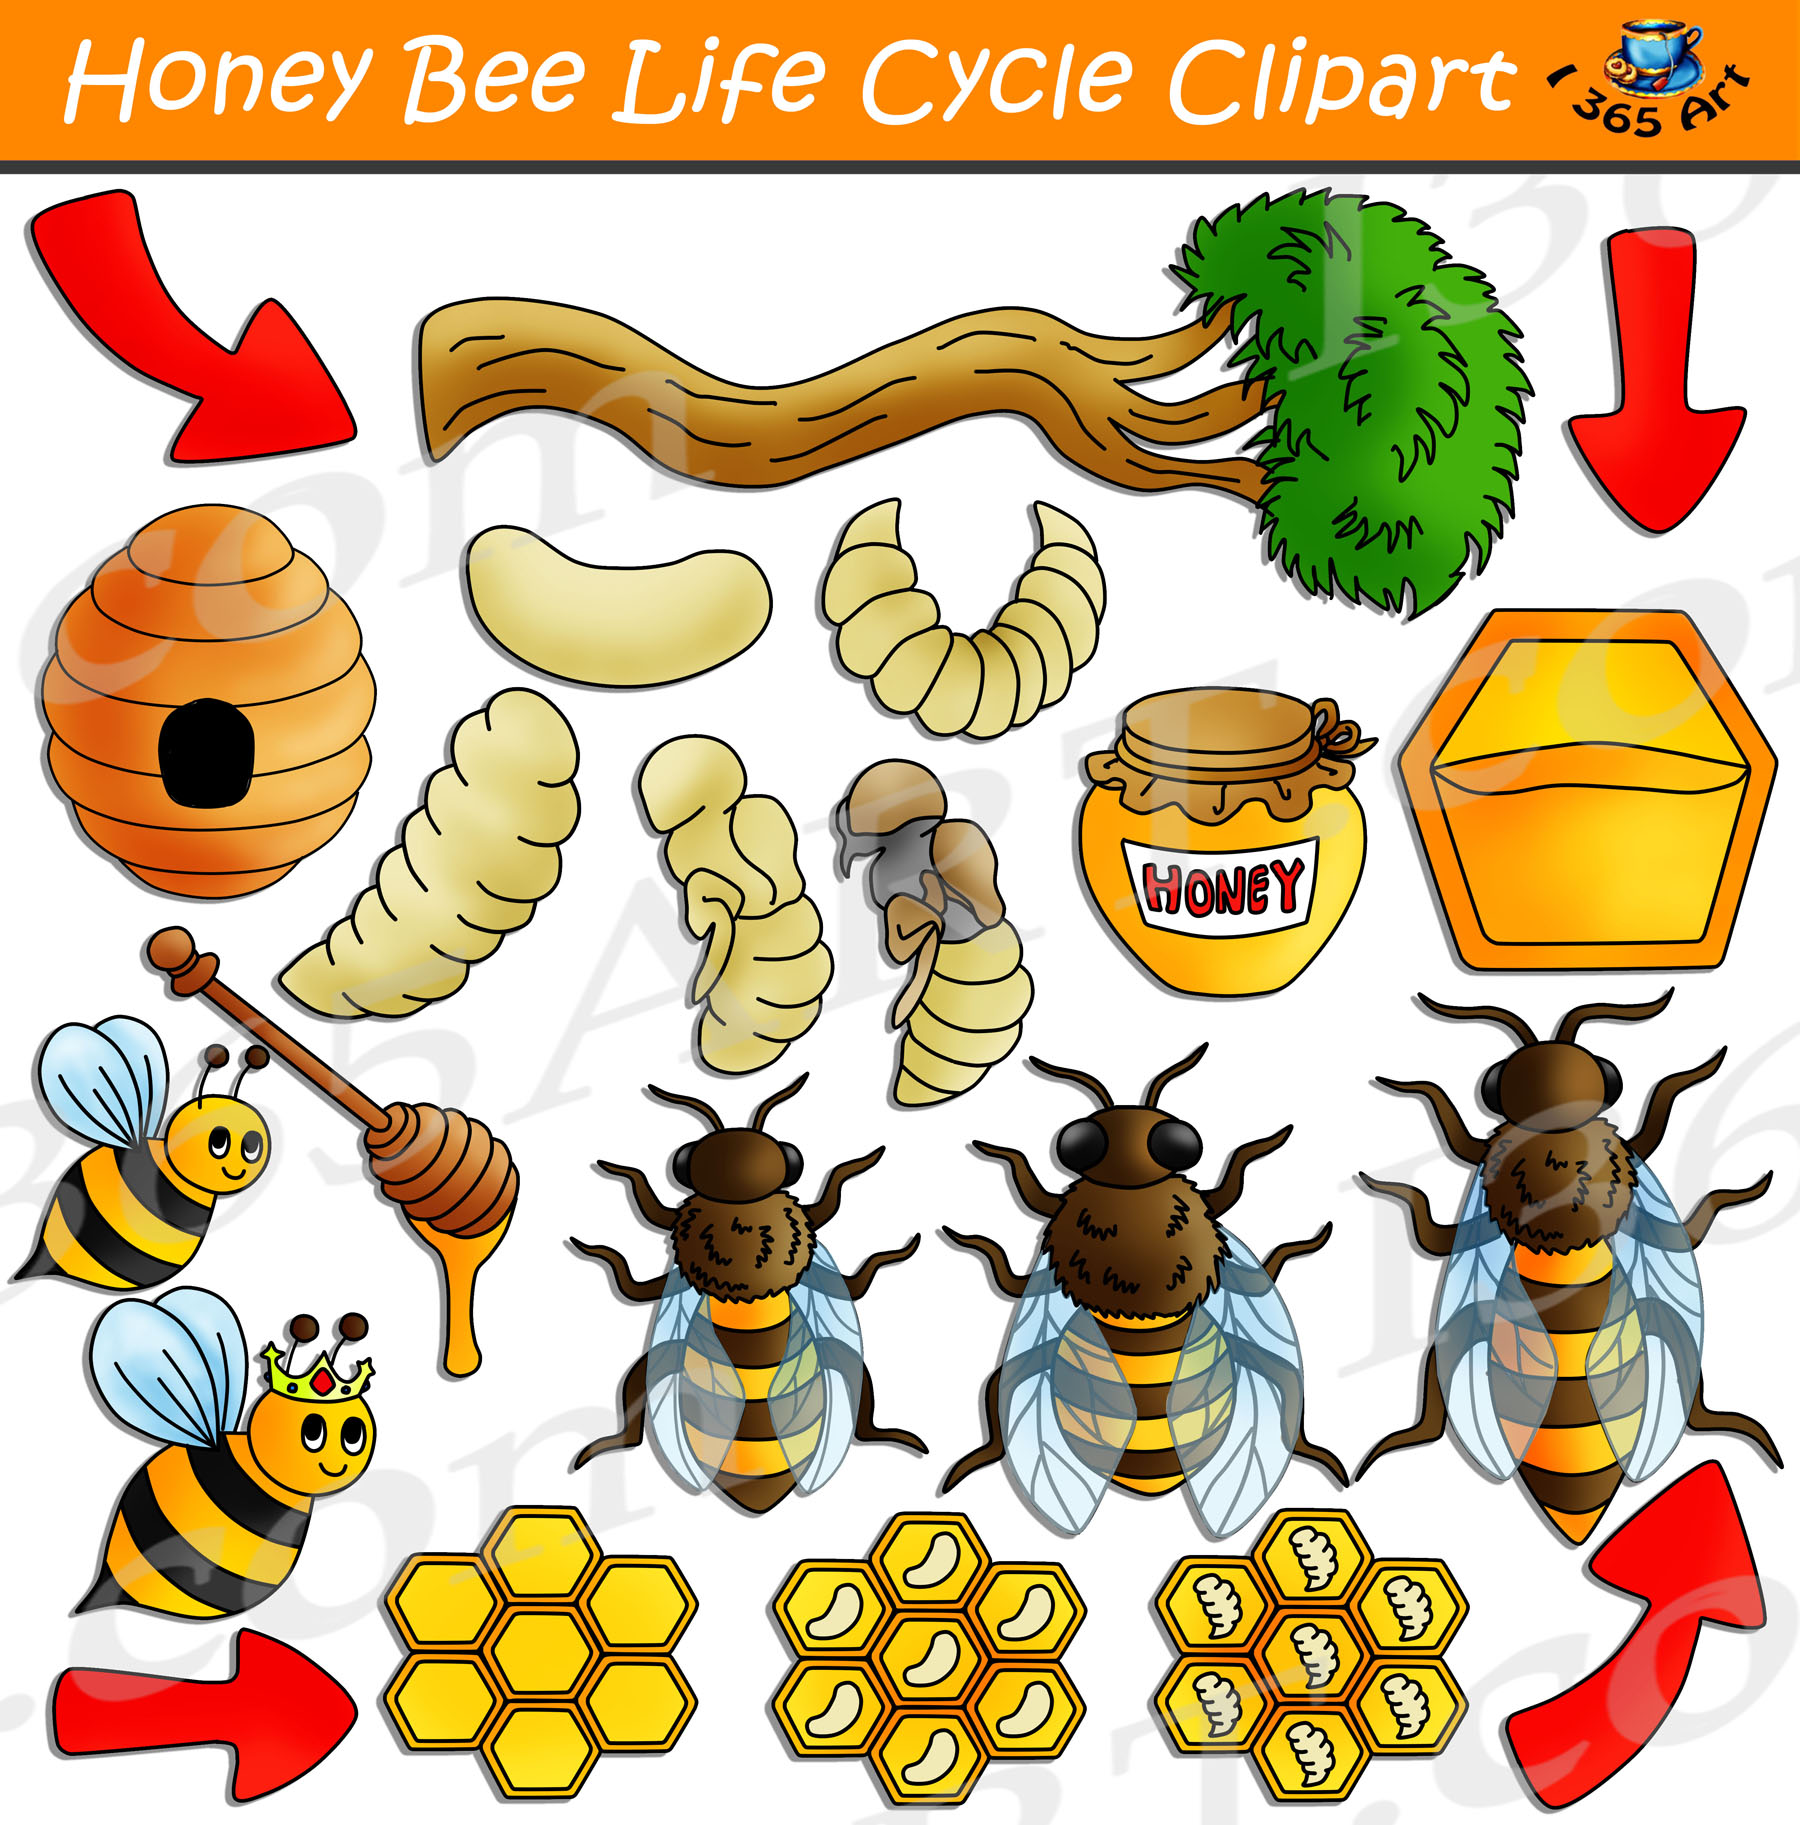 queen honey bee life cycle